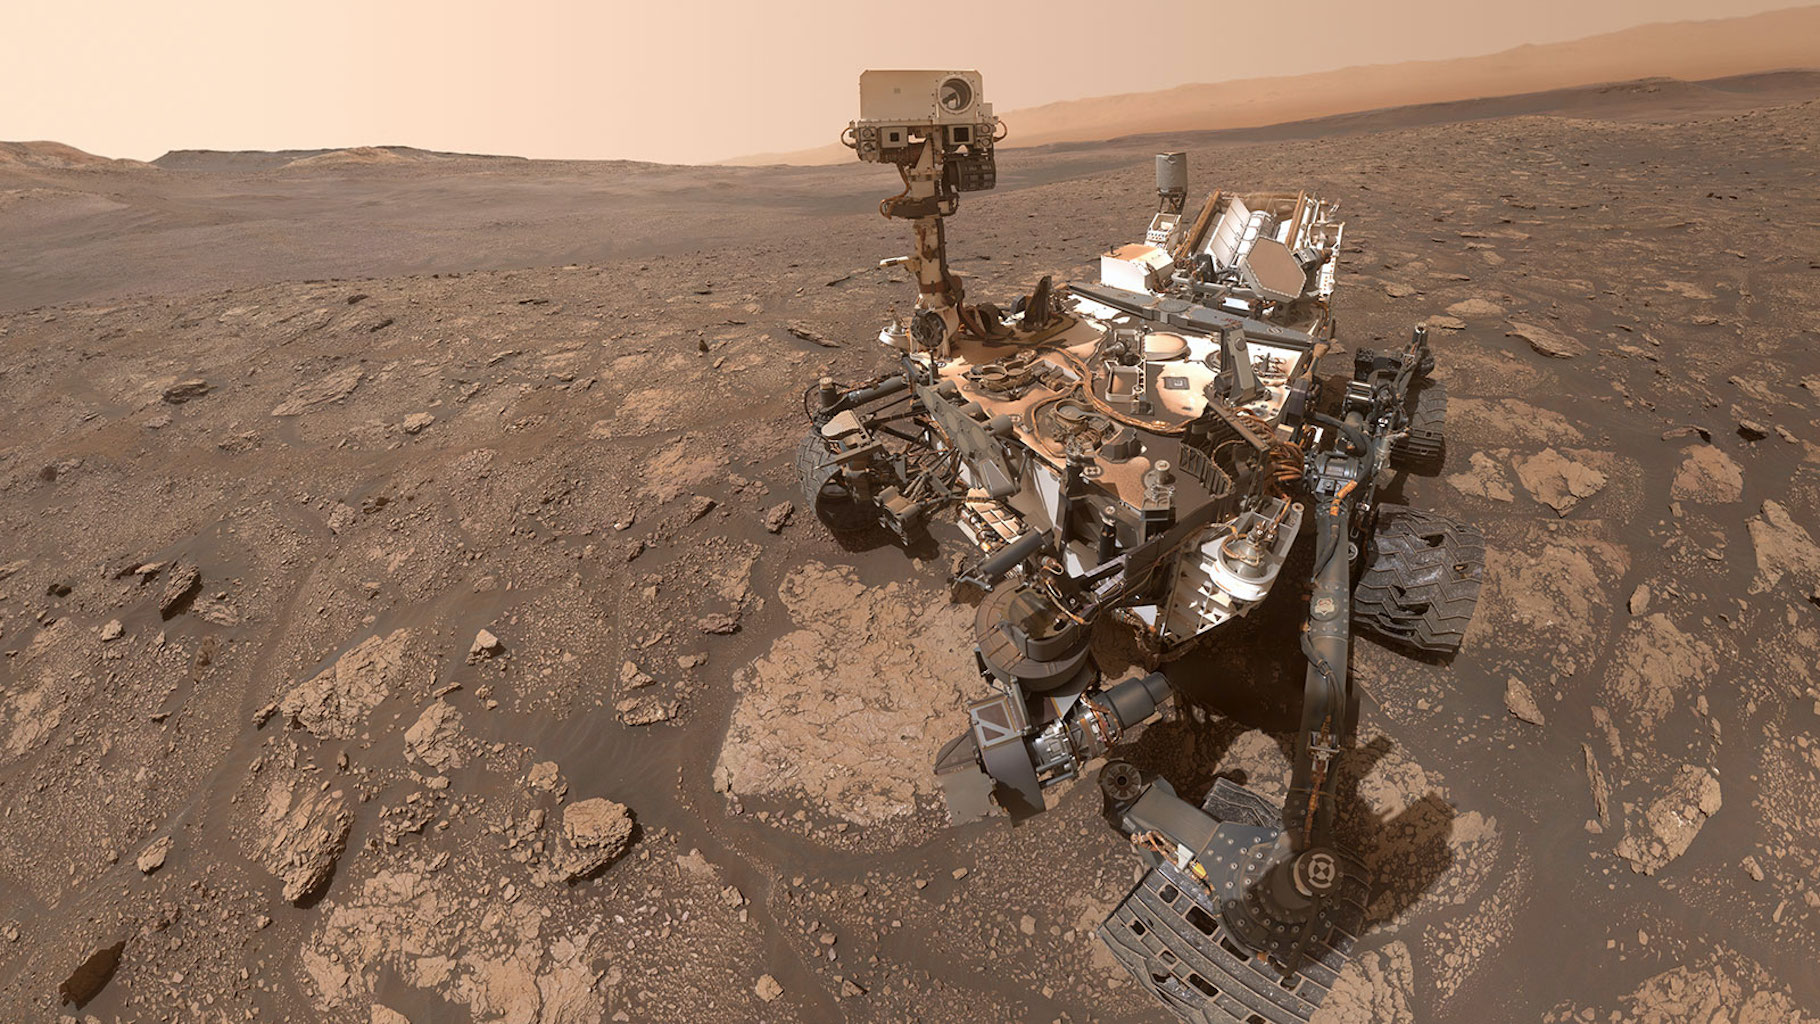 Selfie du rover Curiosity, qui fêtera son dixième anniversaire sur Mars (10 années terrestres) en août prochain. © Nasa, JPL